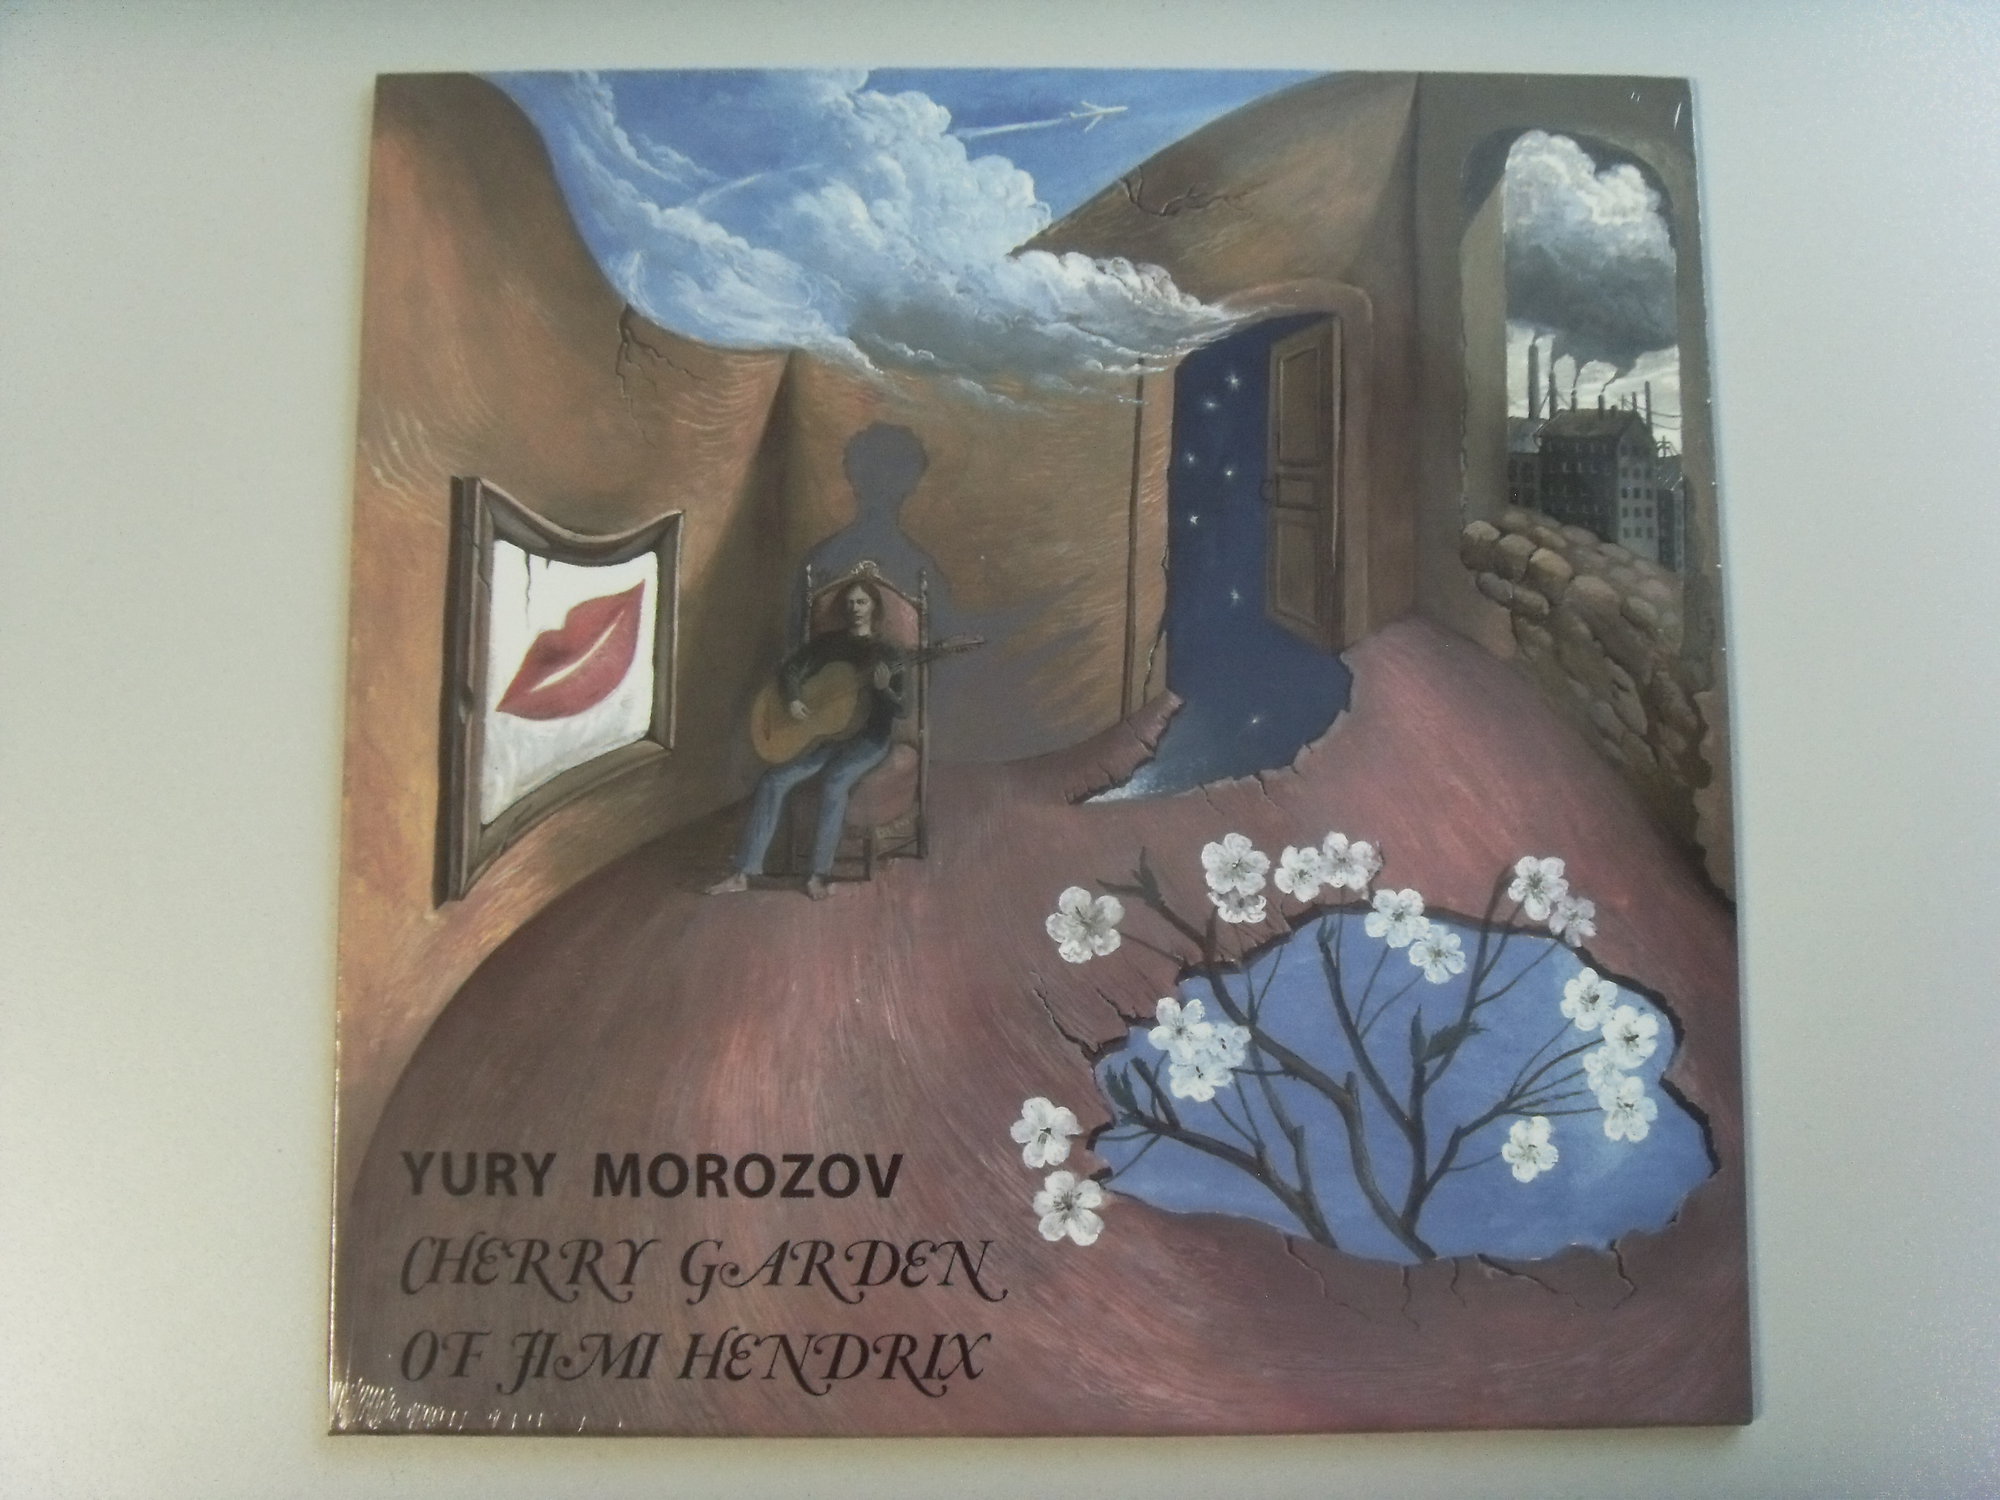 Yury MOROZOV Cherry garden of Jimi Hendrix